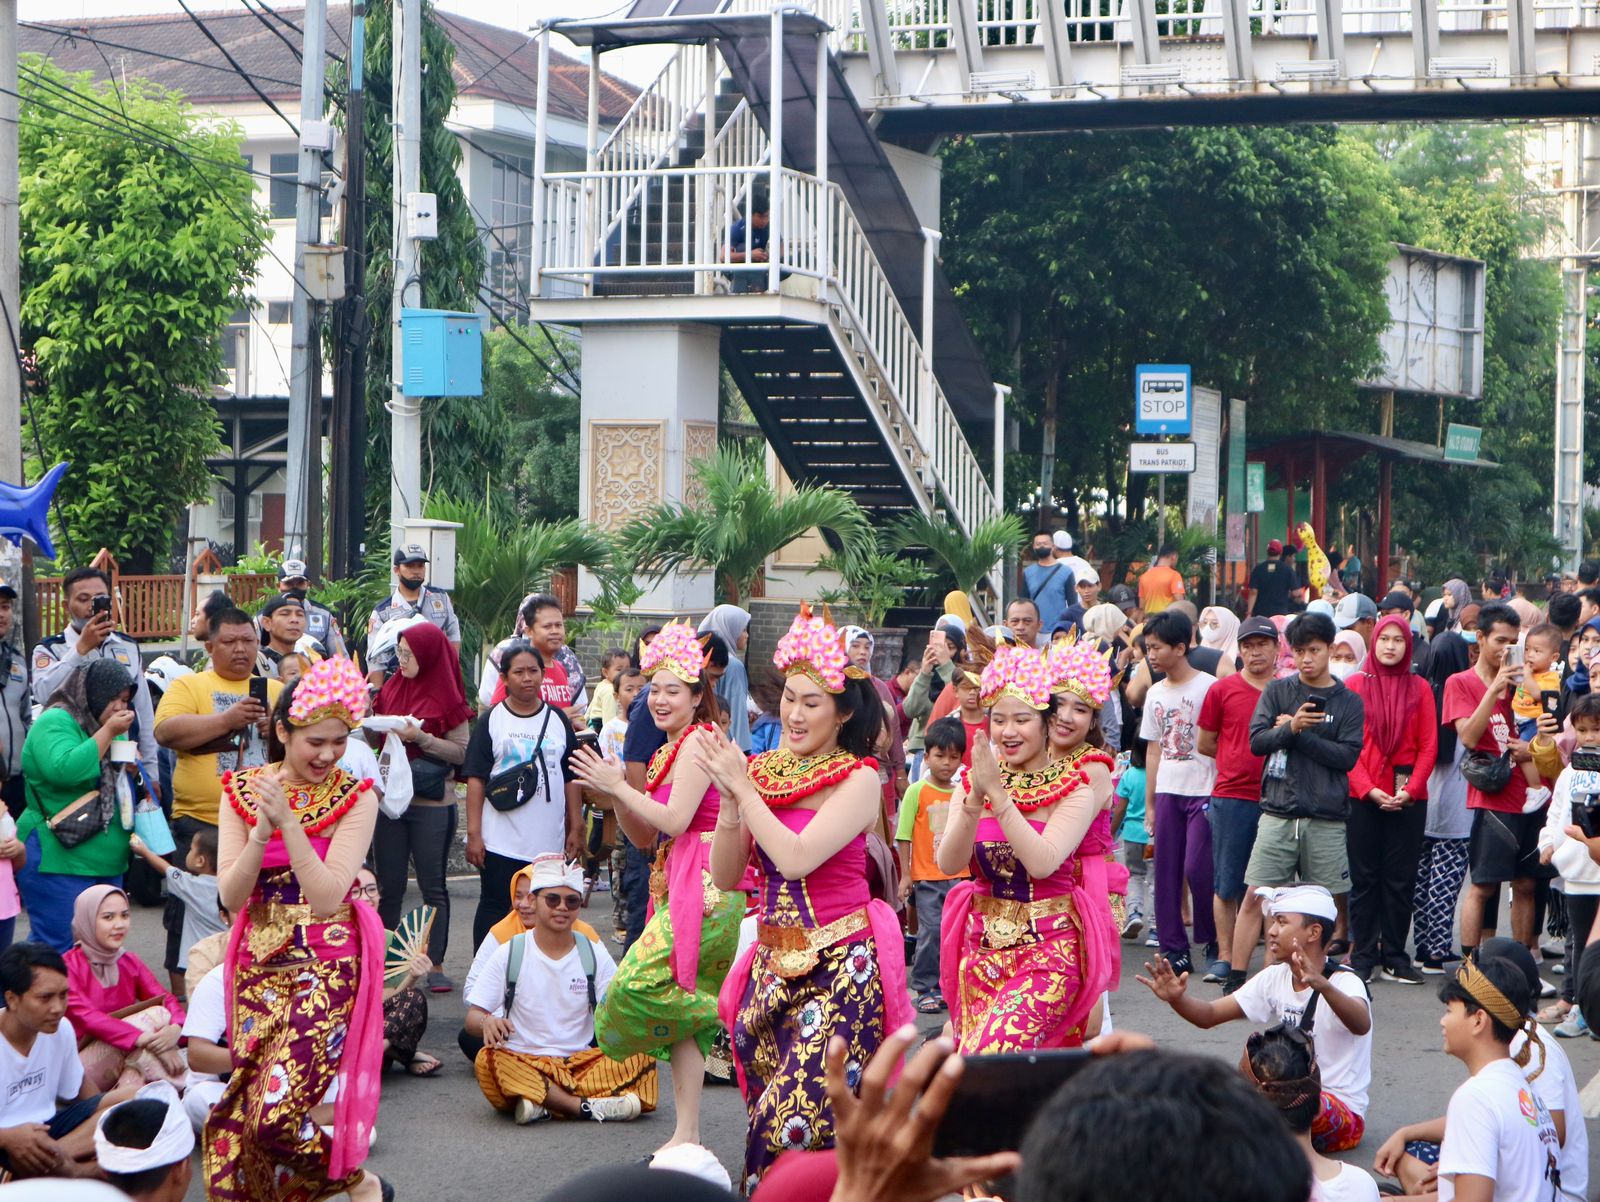 Mahasiswa/i memeragakan adat bali di CFD Jalan Ahmad Yani, Kota Bekasi. Foto: Istimewa